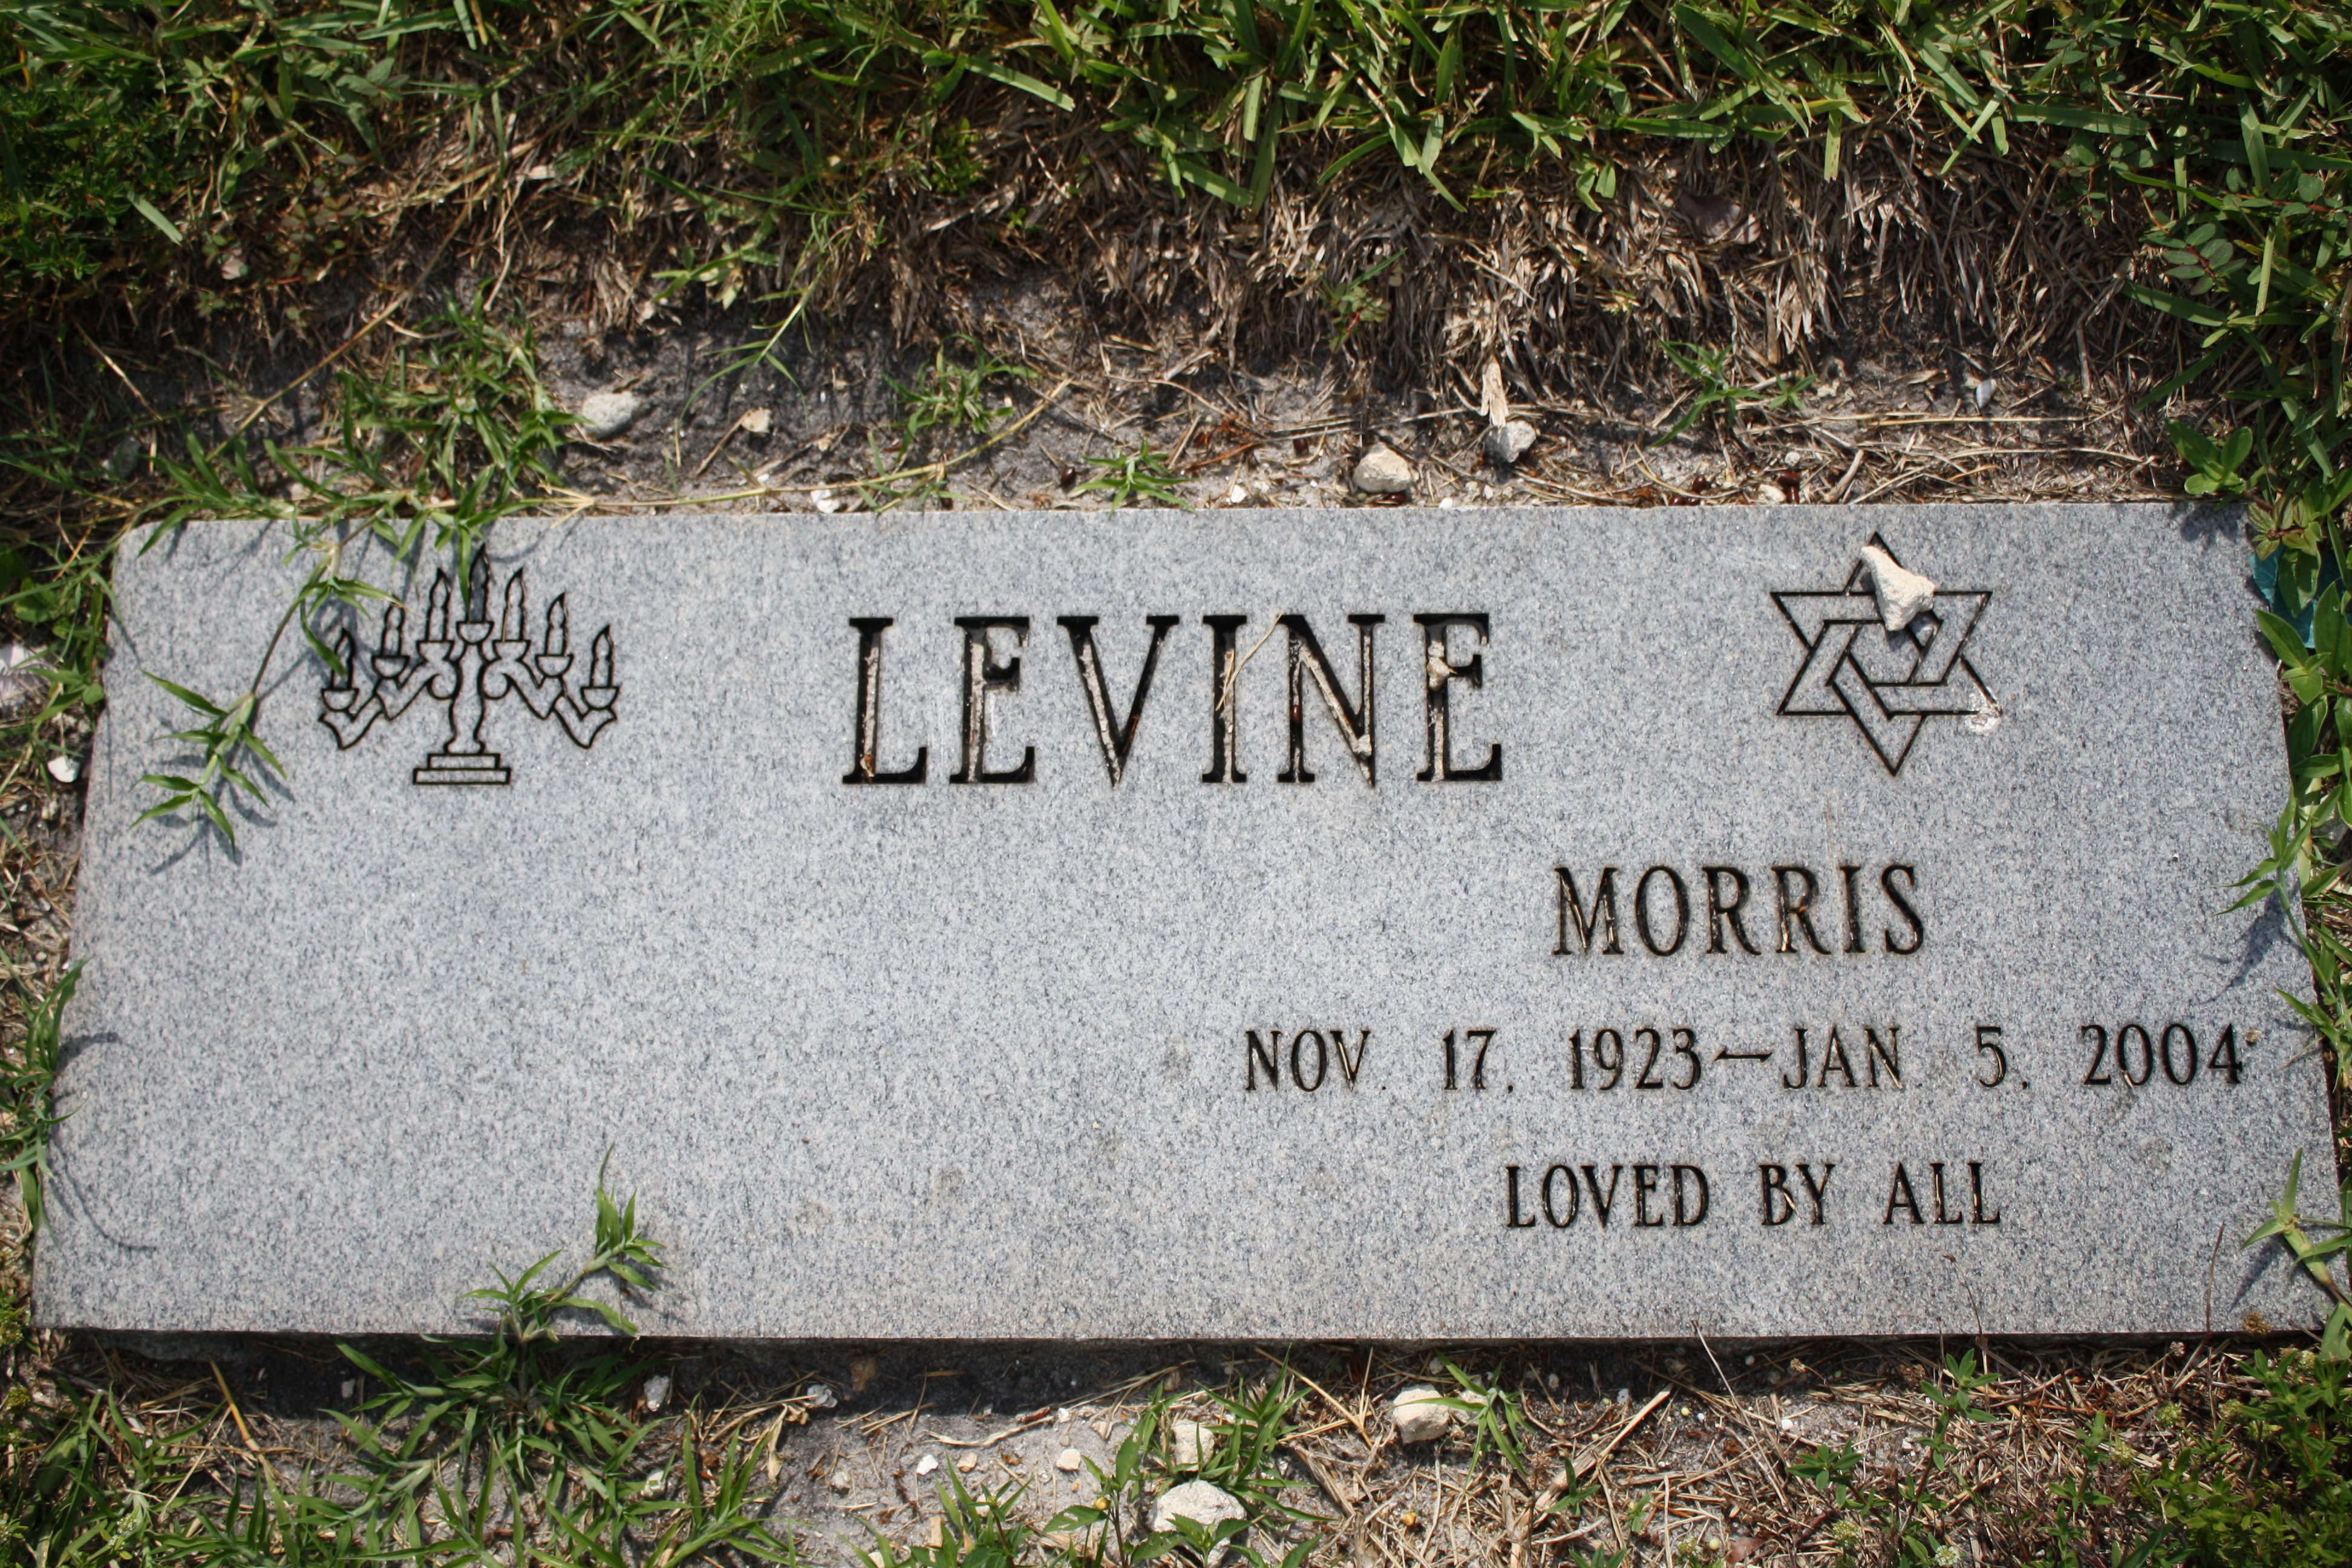 Morris Levine